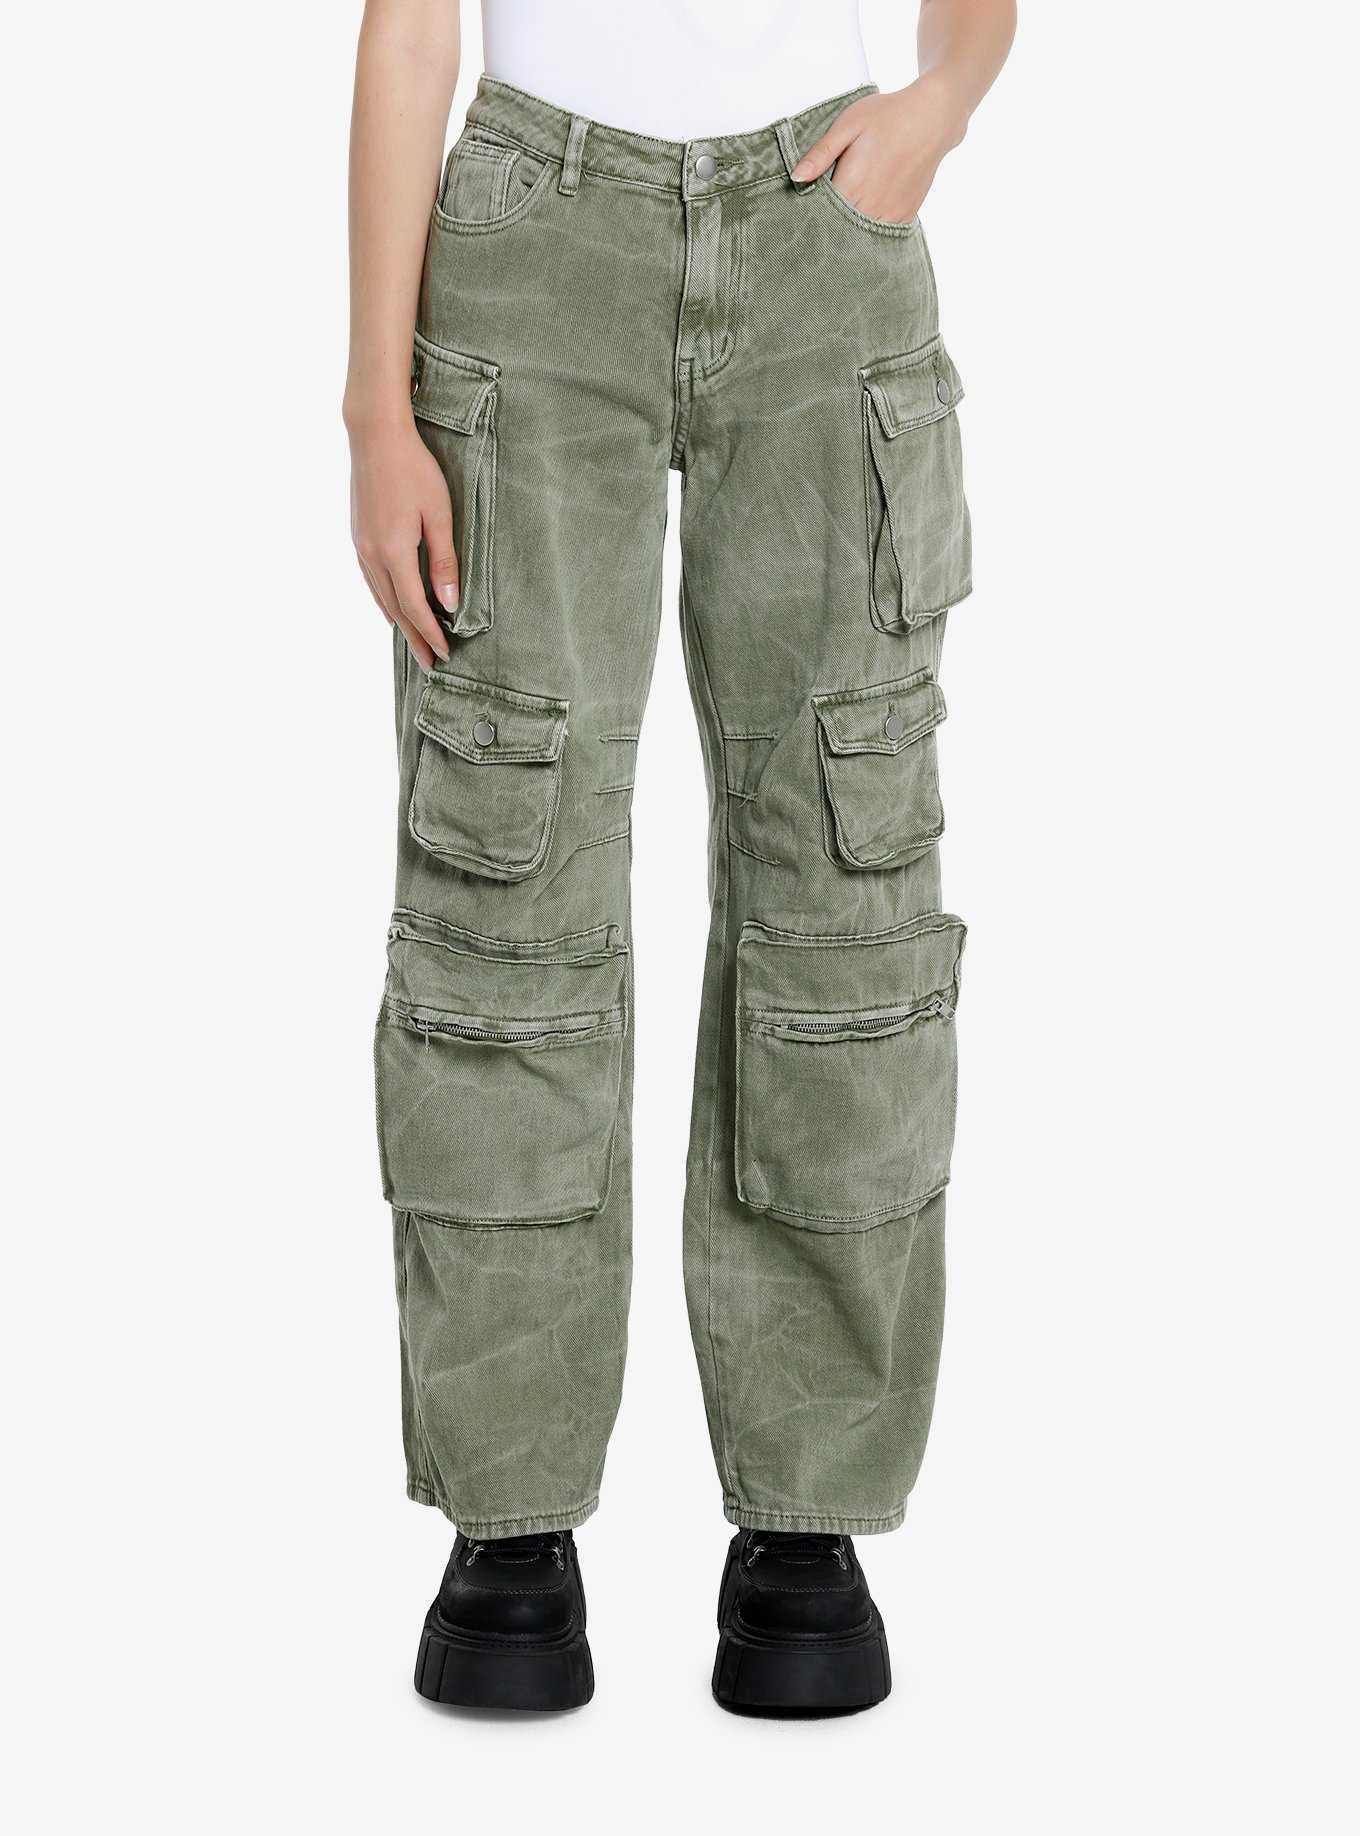 Social Collision Black Double Pocket Cargo Pants Plus Size